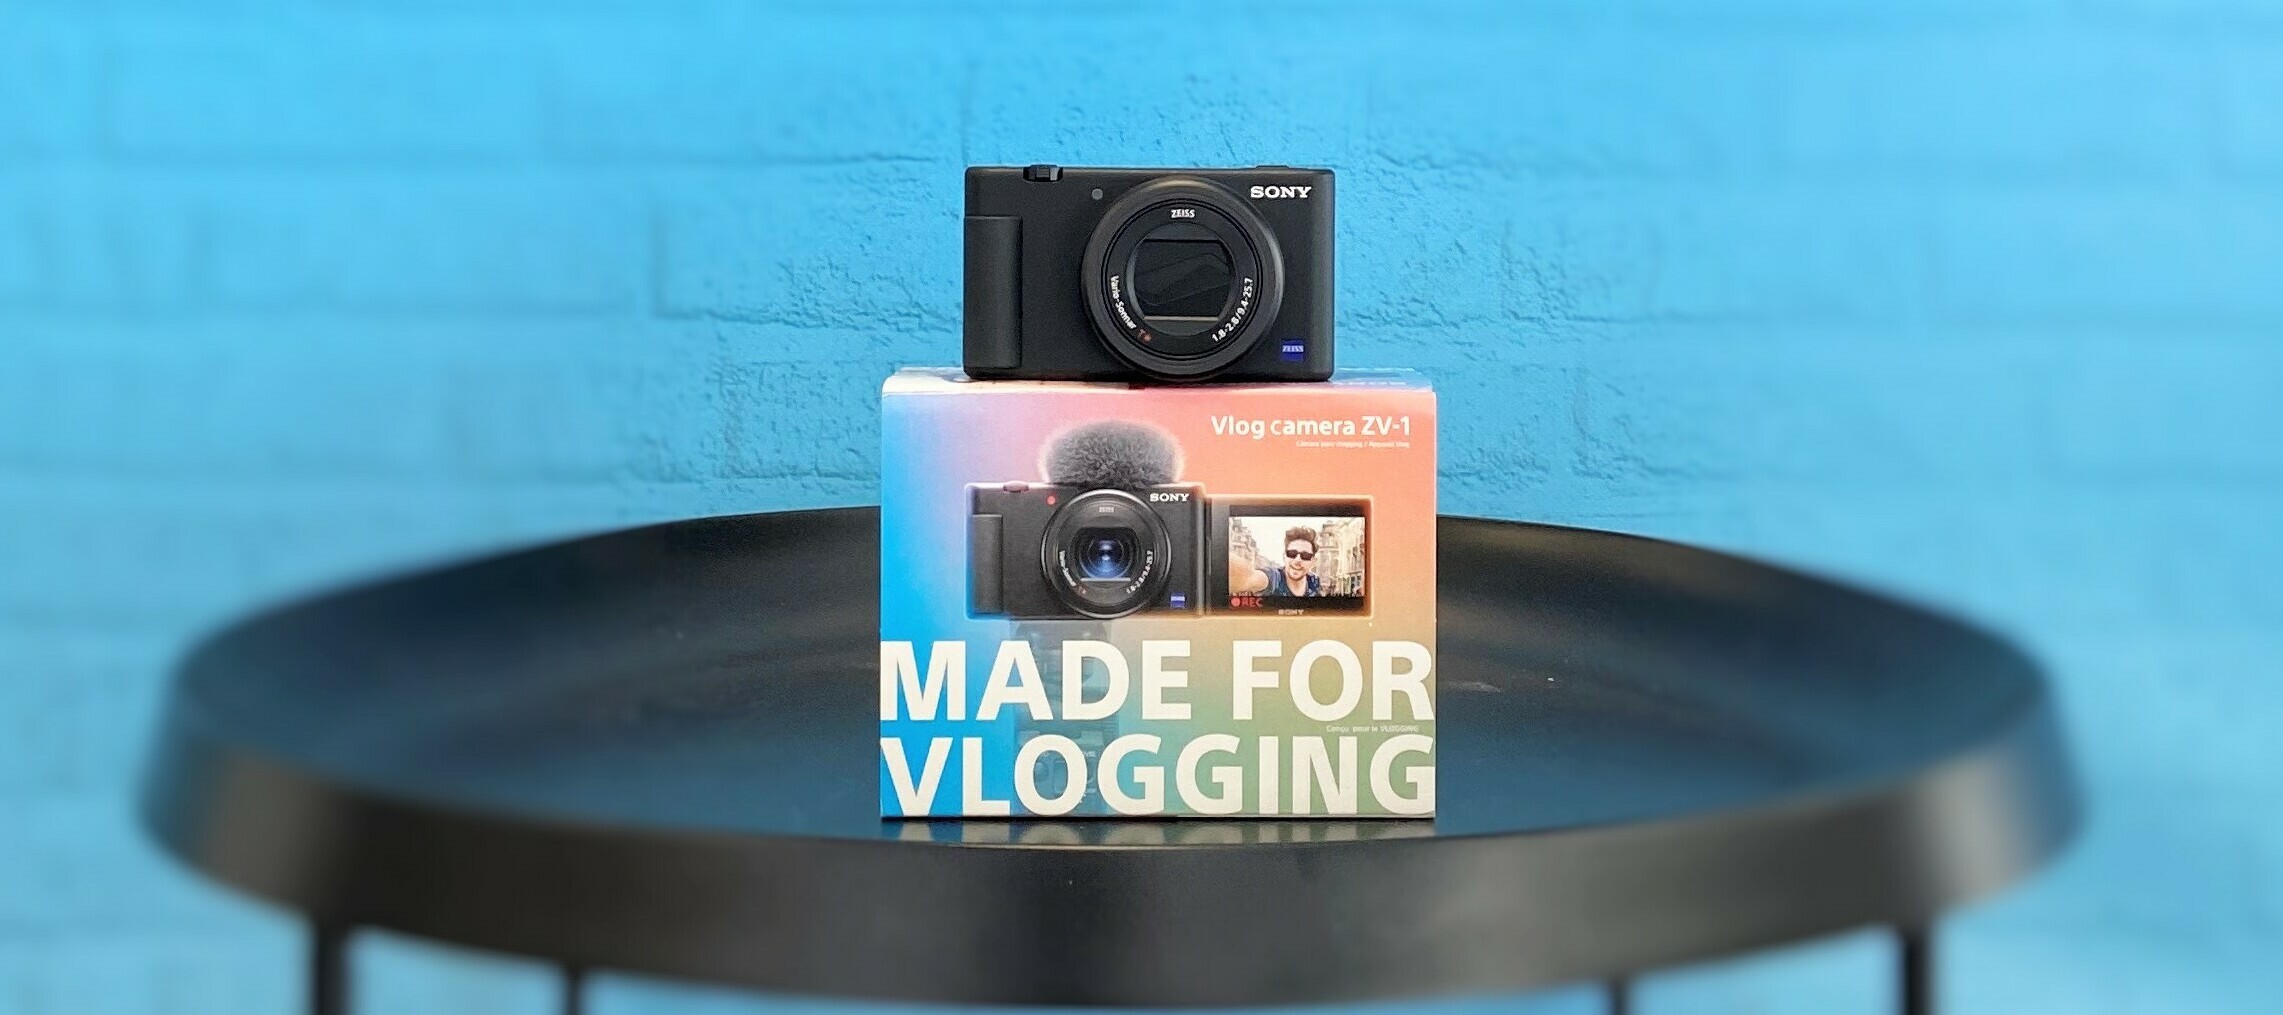 Sony Vlog-Kamera ZV-1 - teste jetzt die beste Cam für deinen Content!